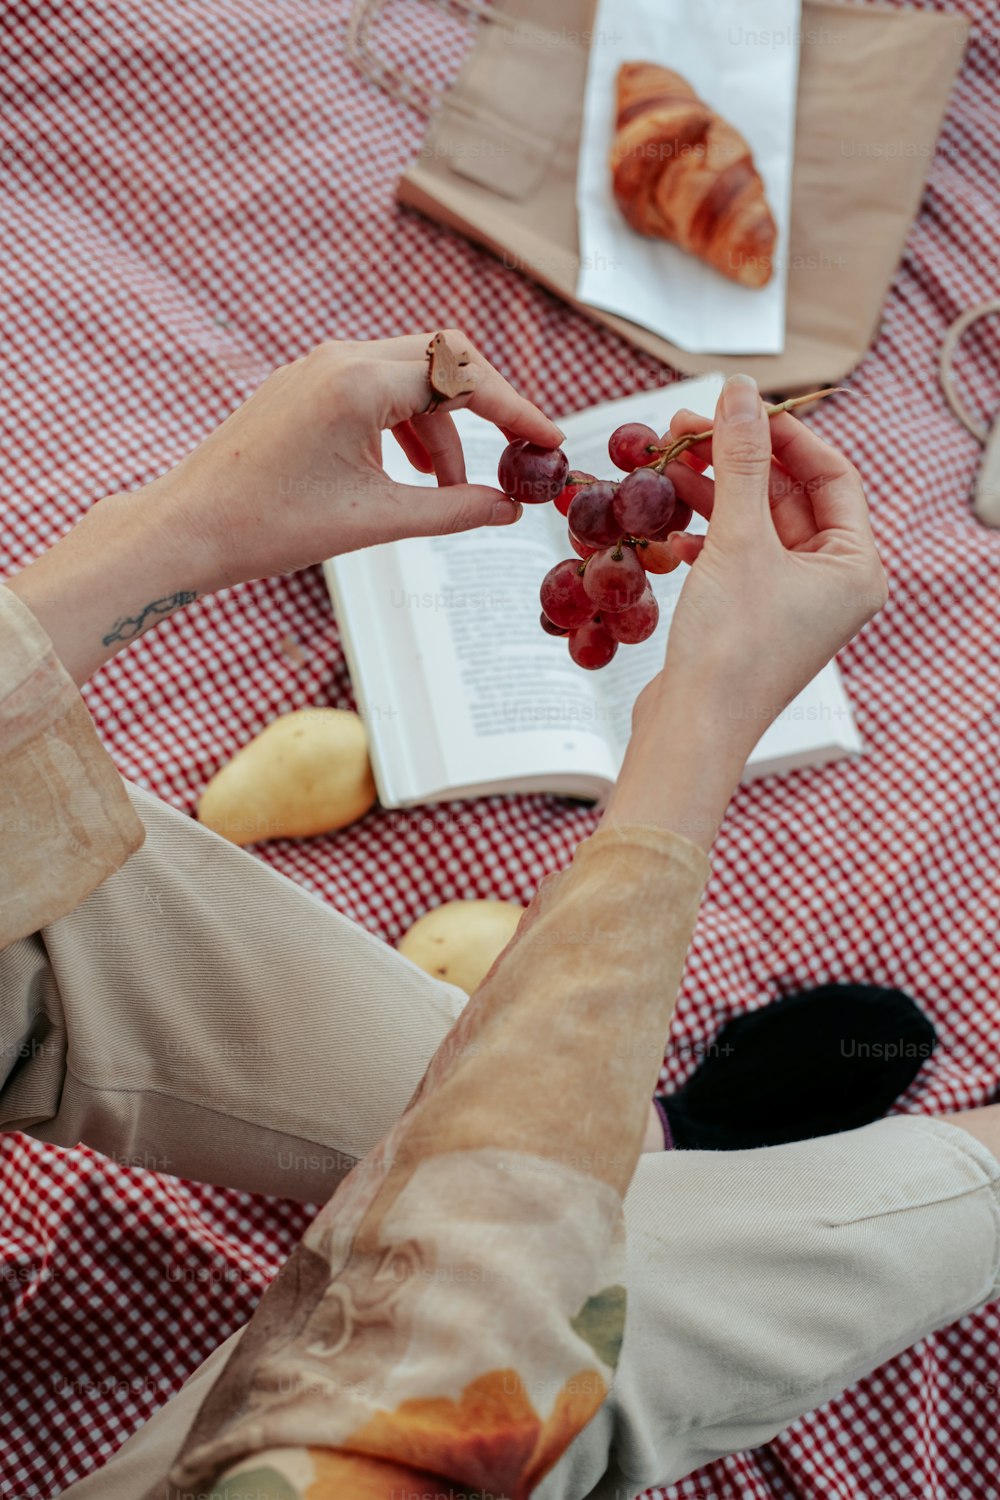 Une femme assise à une table avec un livre et des raisins